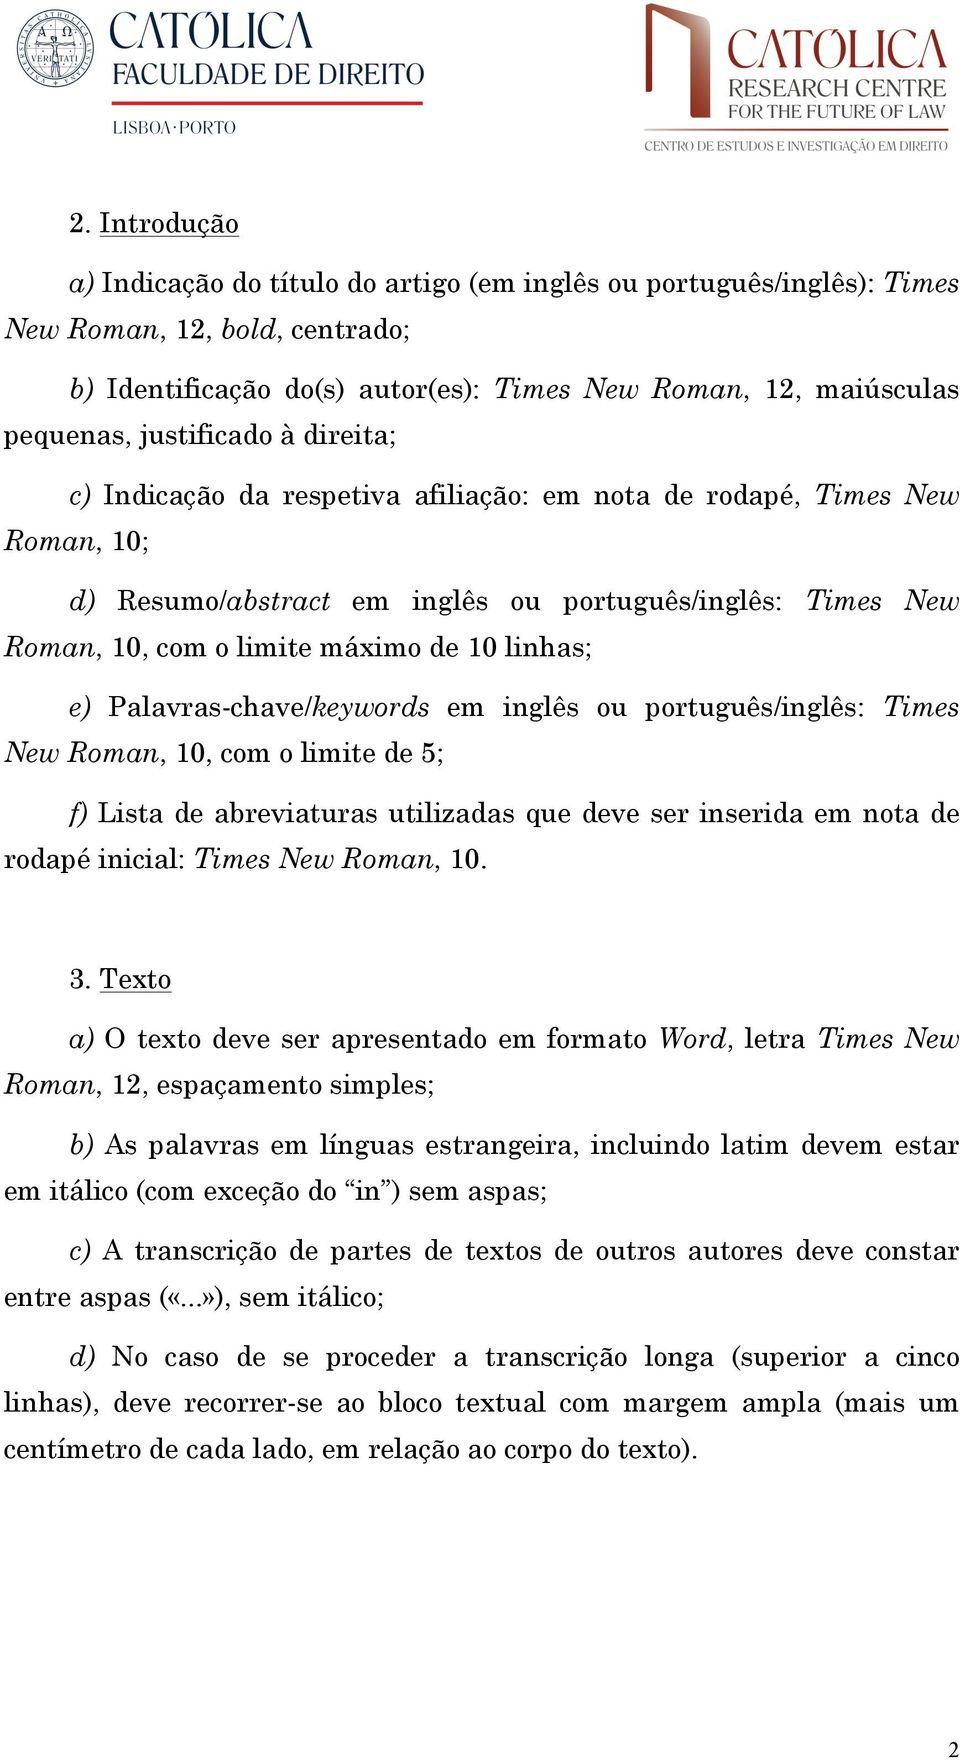 linhas; e) Palavras-chave/keywords em inglês ou português/inglês: Times New Roman, 10, com o limite de 5; f) Lista de abreviaturas utilizadas que deve ser inserida em nota de rodapé inicial: Times